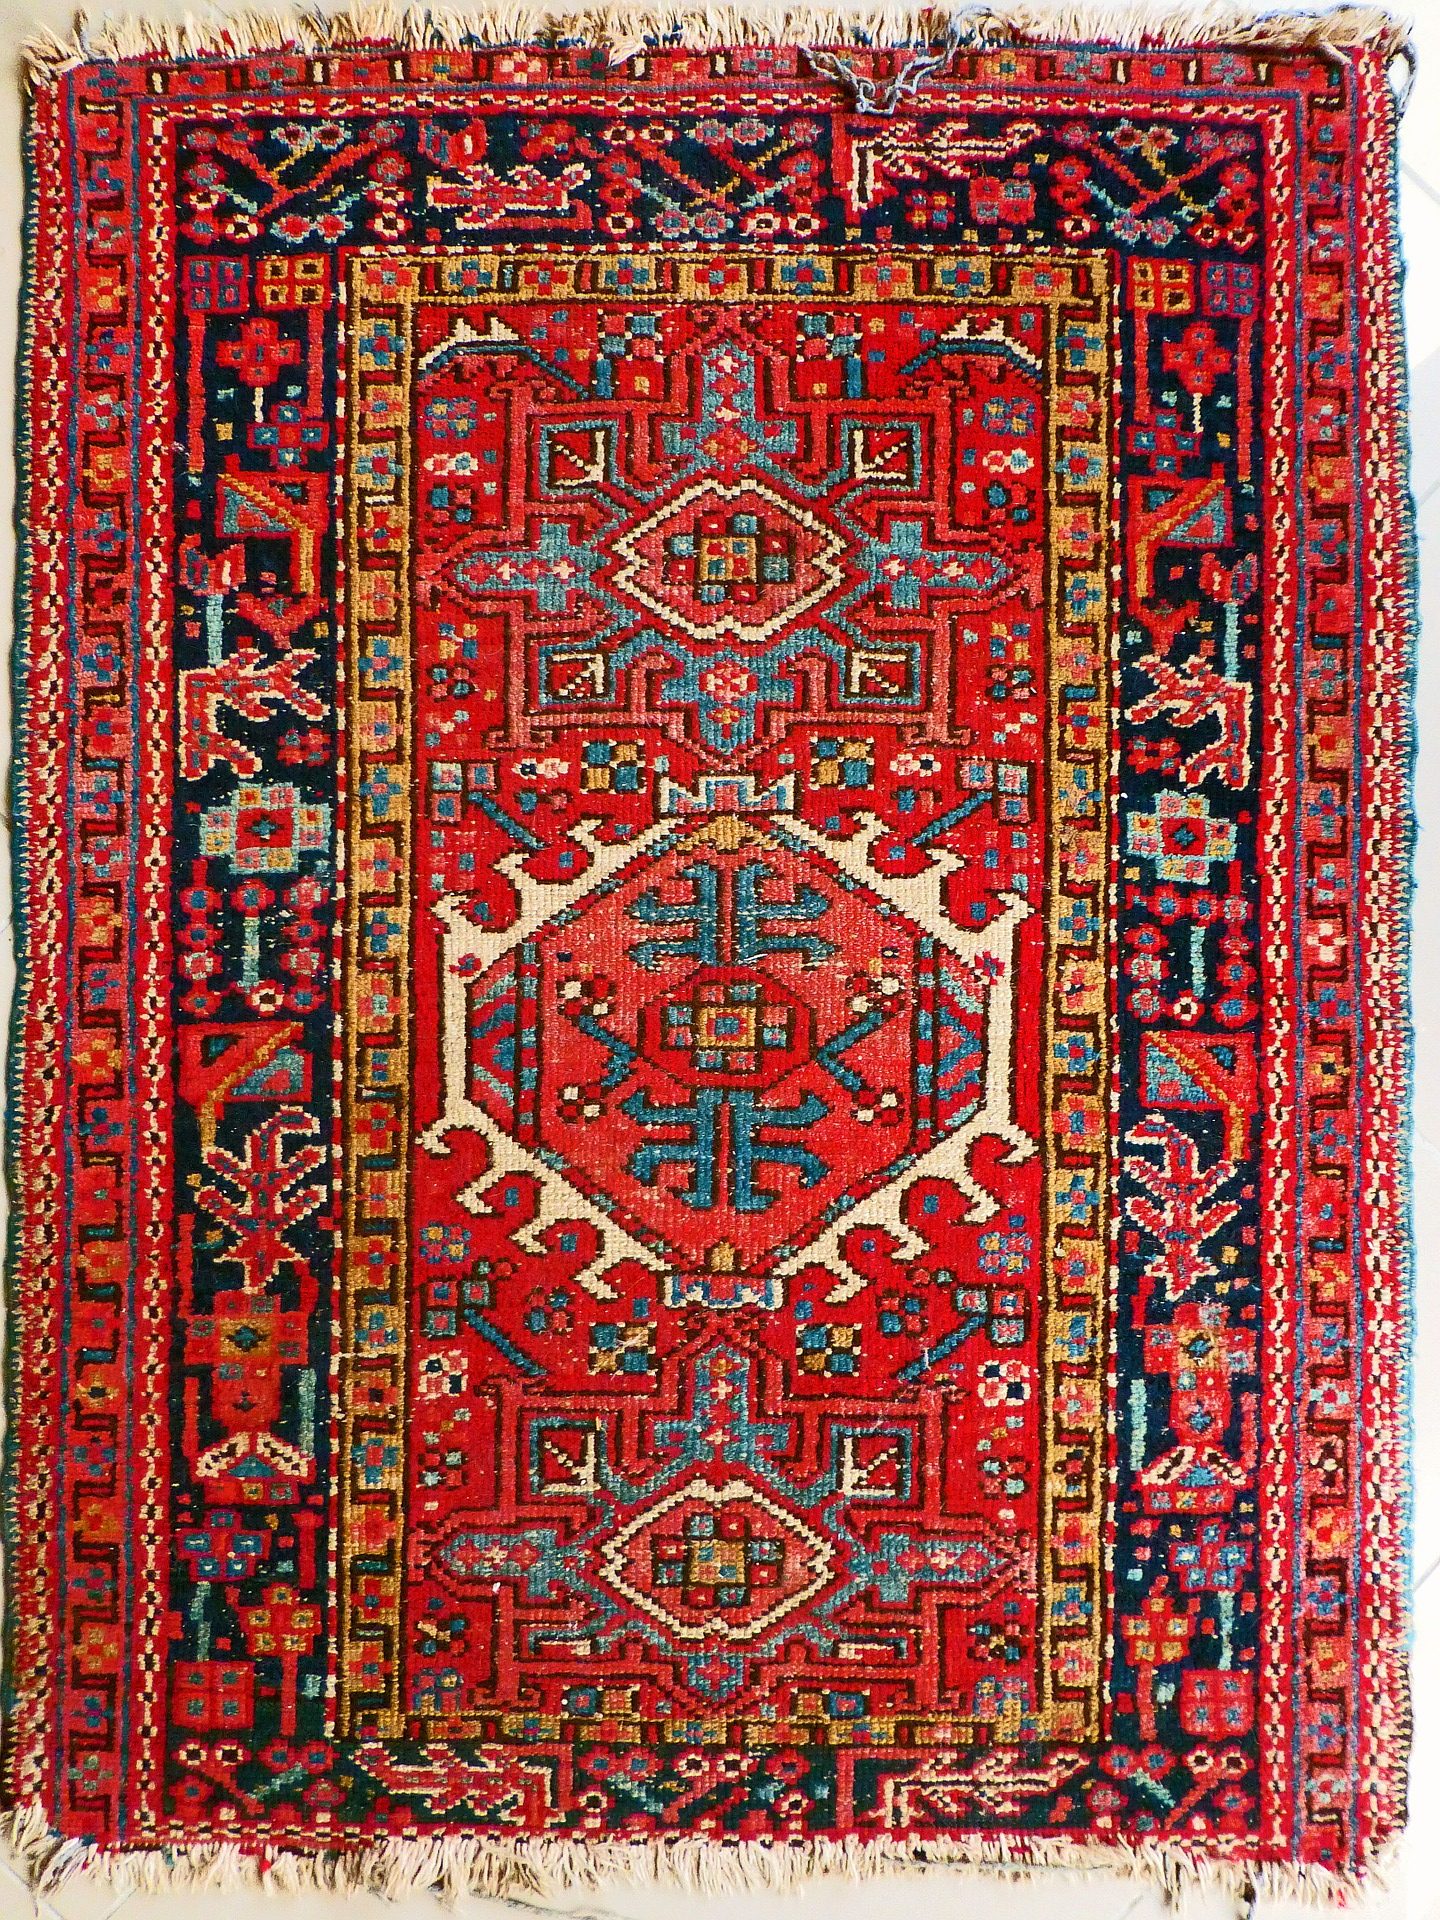 Storia e origine del tappeto